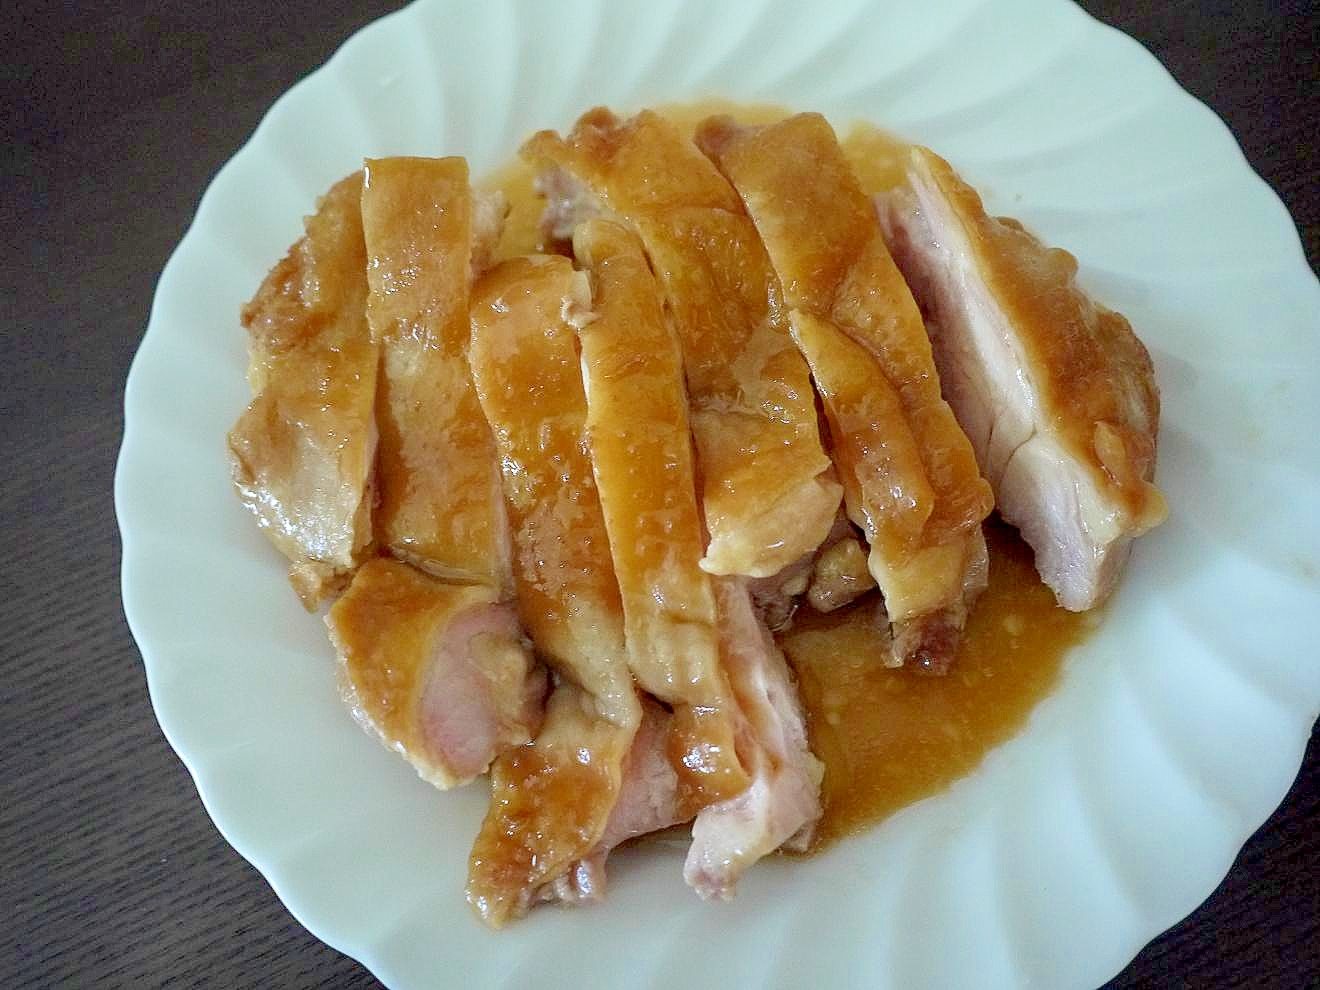 鶏肉のニンニク風味のチャーシュー